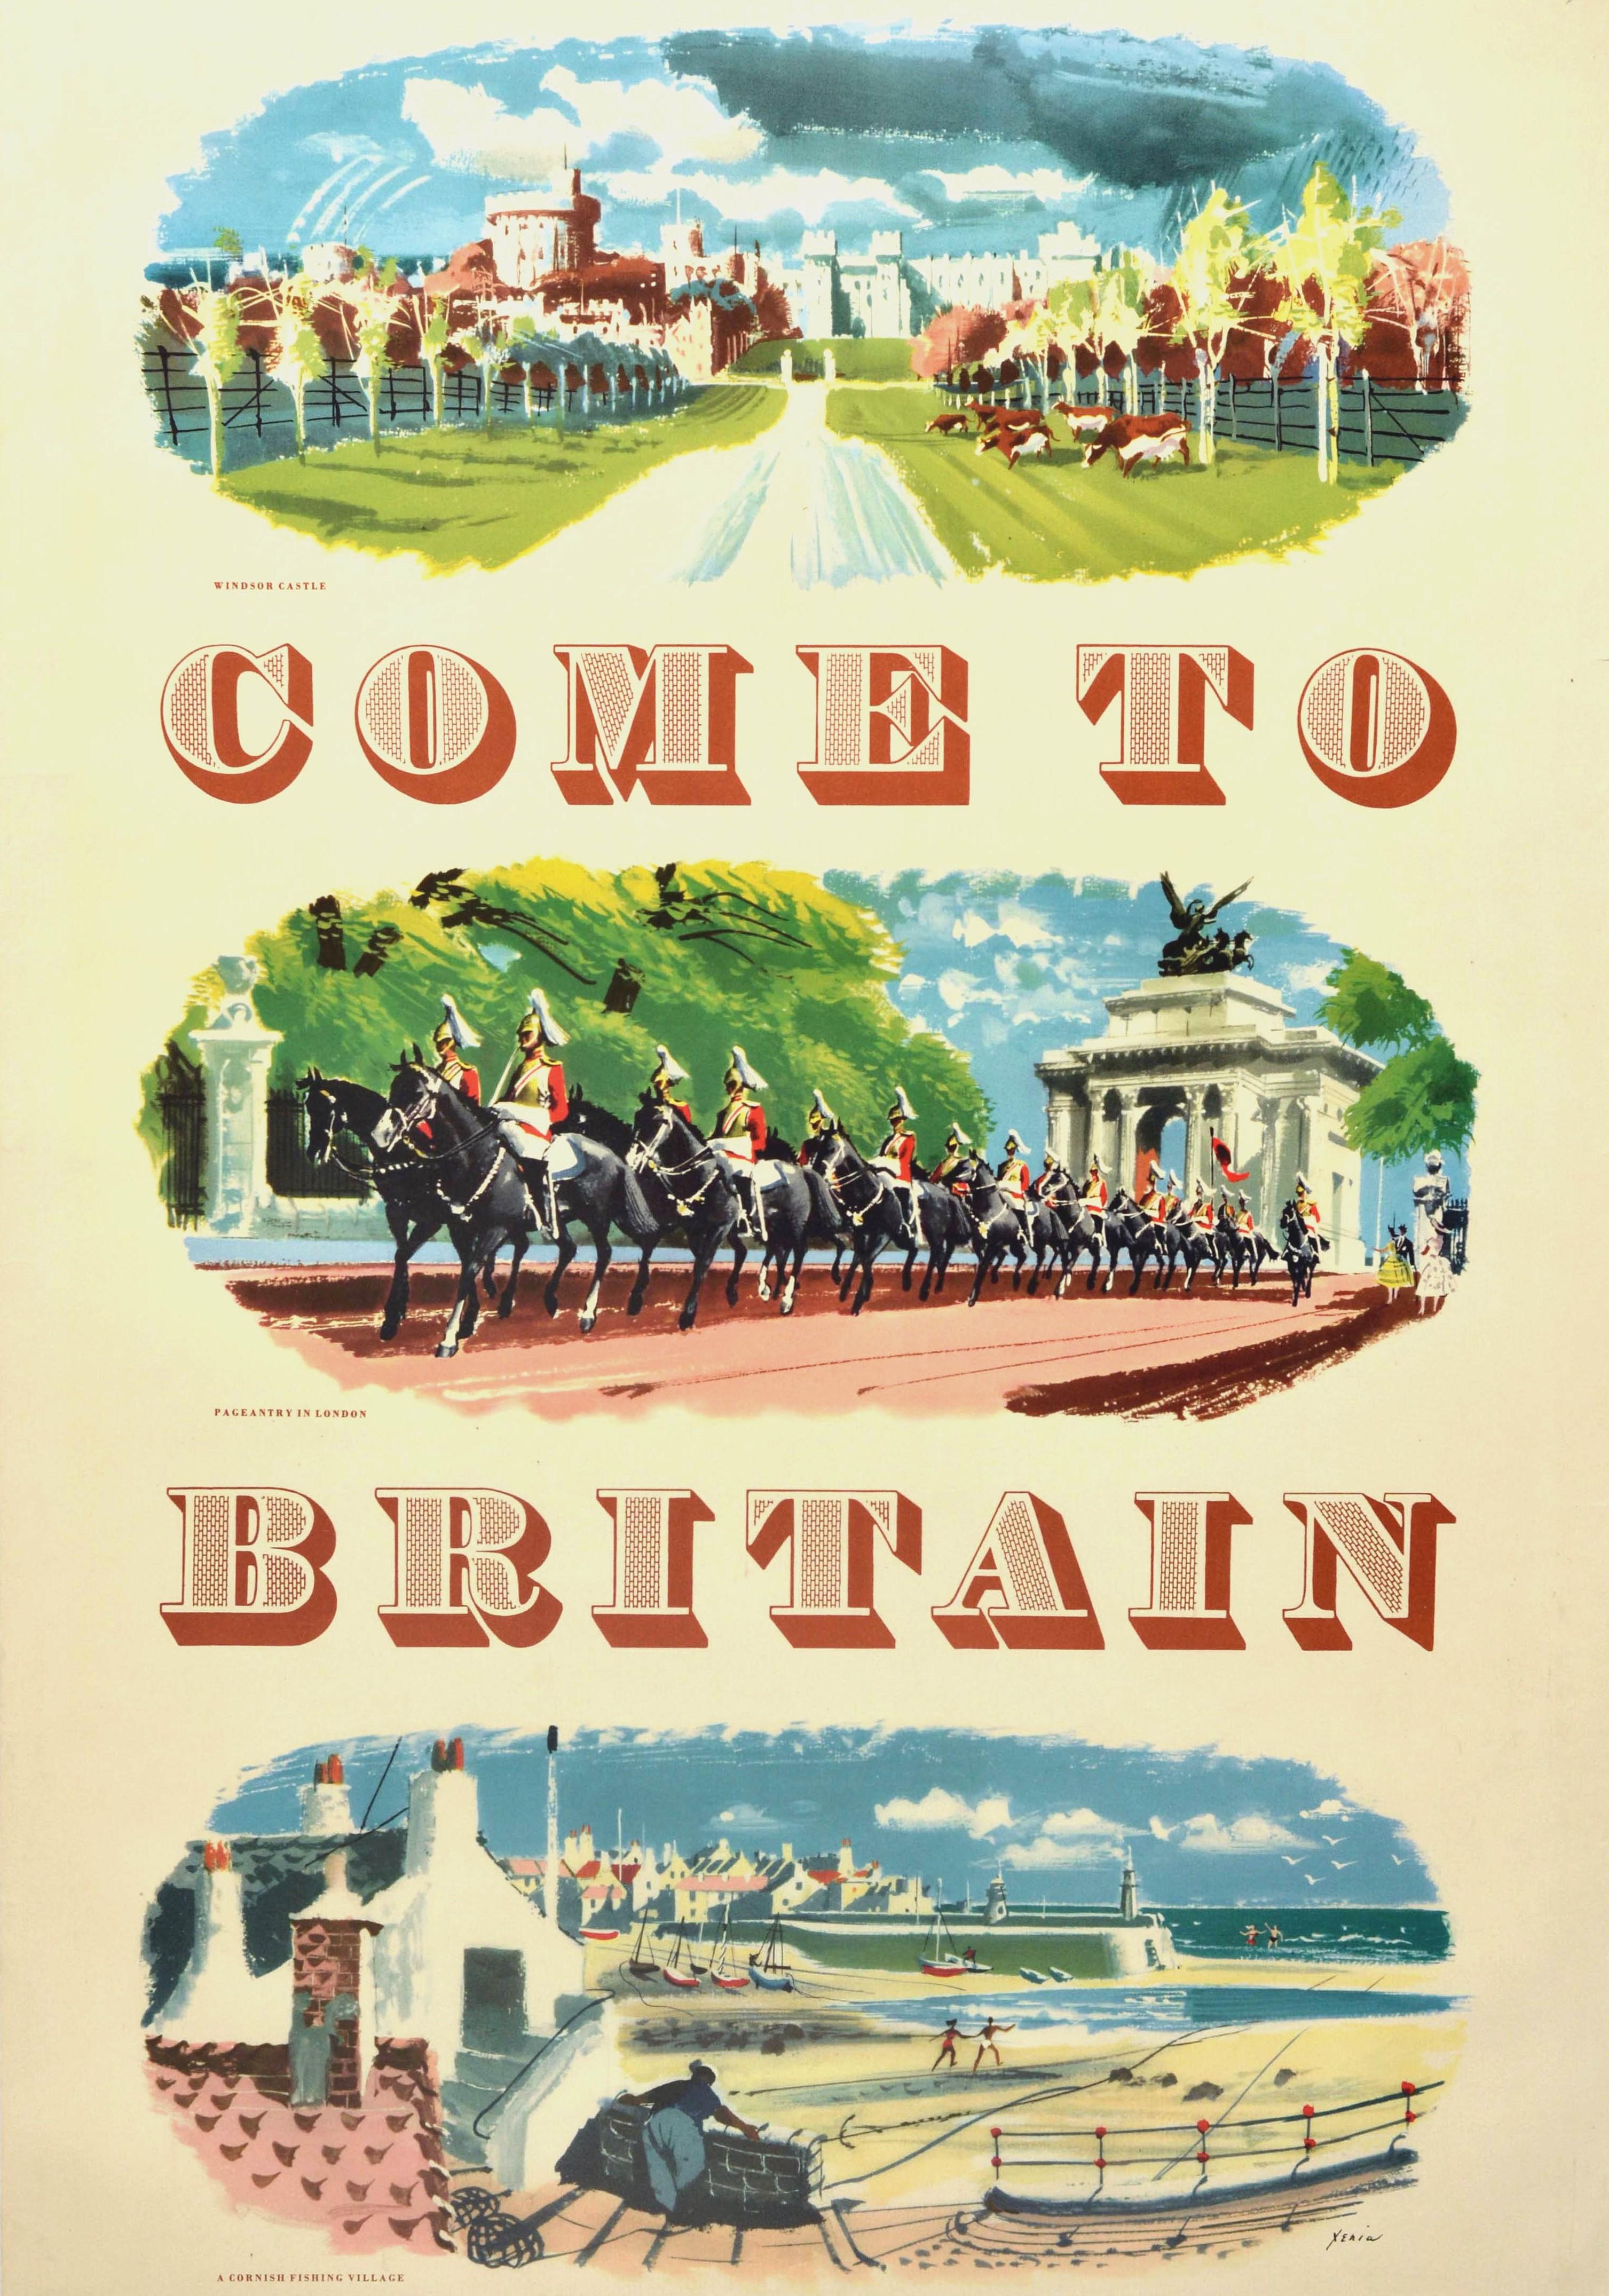 Affiche publicitaire originale d'époque publiée par la British Travel and Holidays Association pour promouvoir les diverses attractions touristiques traditionnelles, historiques et autres, à l'intention des visiteurs - Come to Britain - présentant